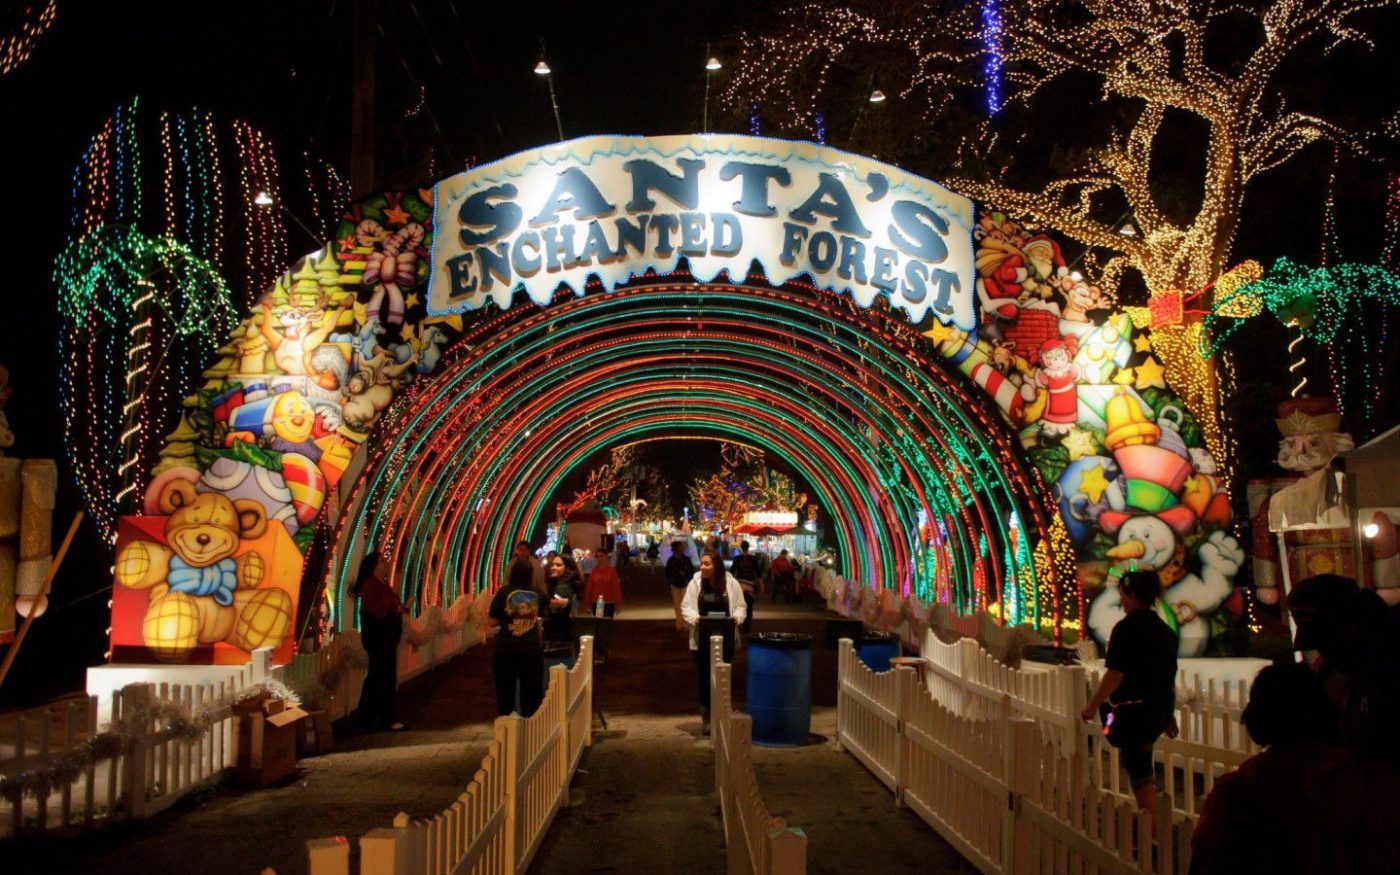 Entrée illuminée de la fête foraine Santa's enchanted forest, une recommandation Miami OffRoad pour fêter Noël à Miami